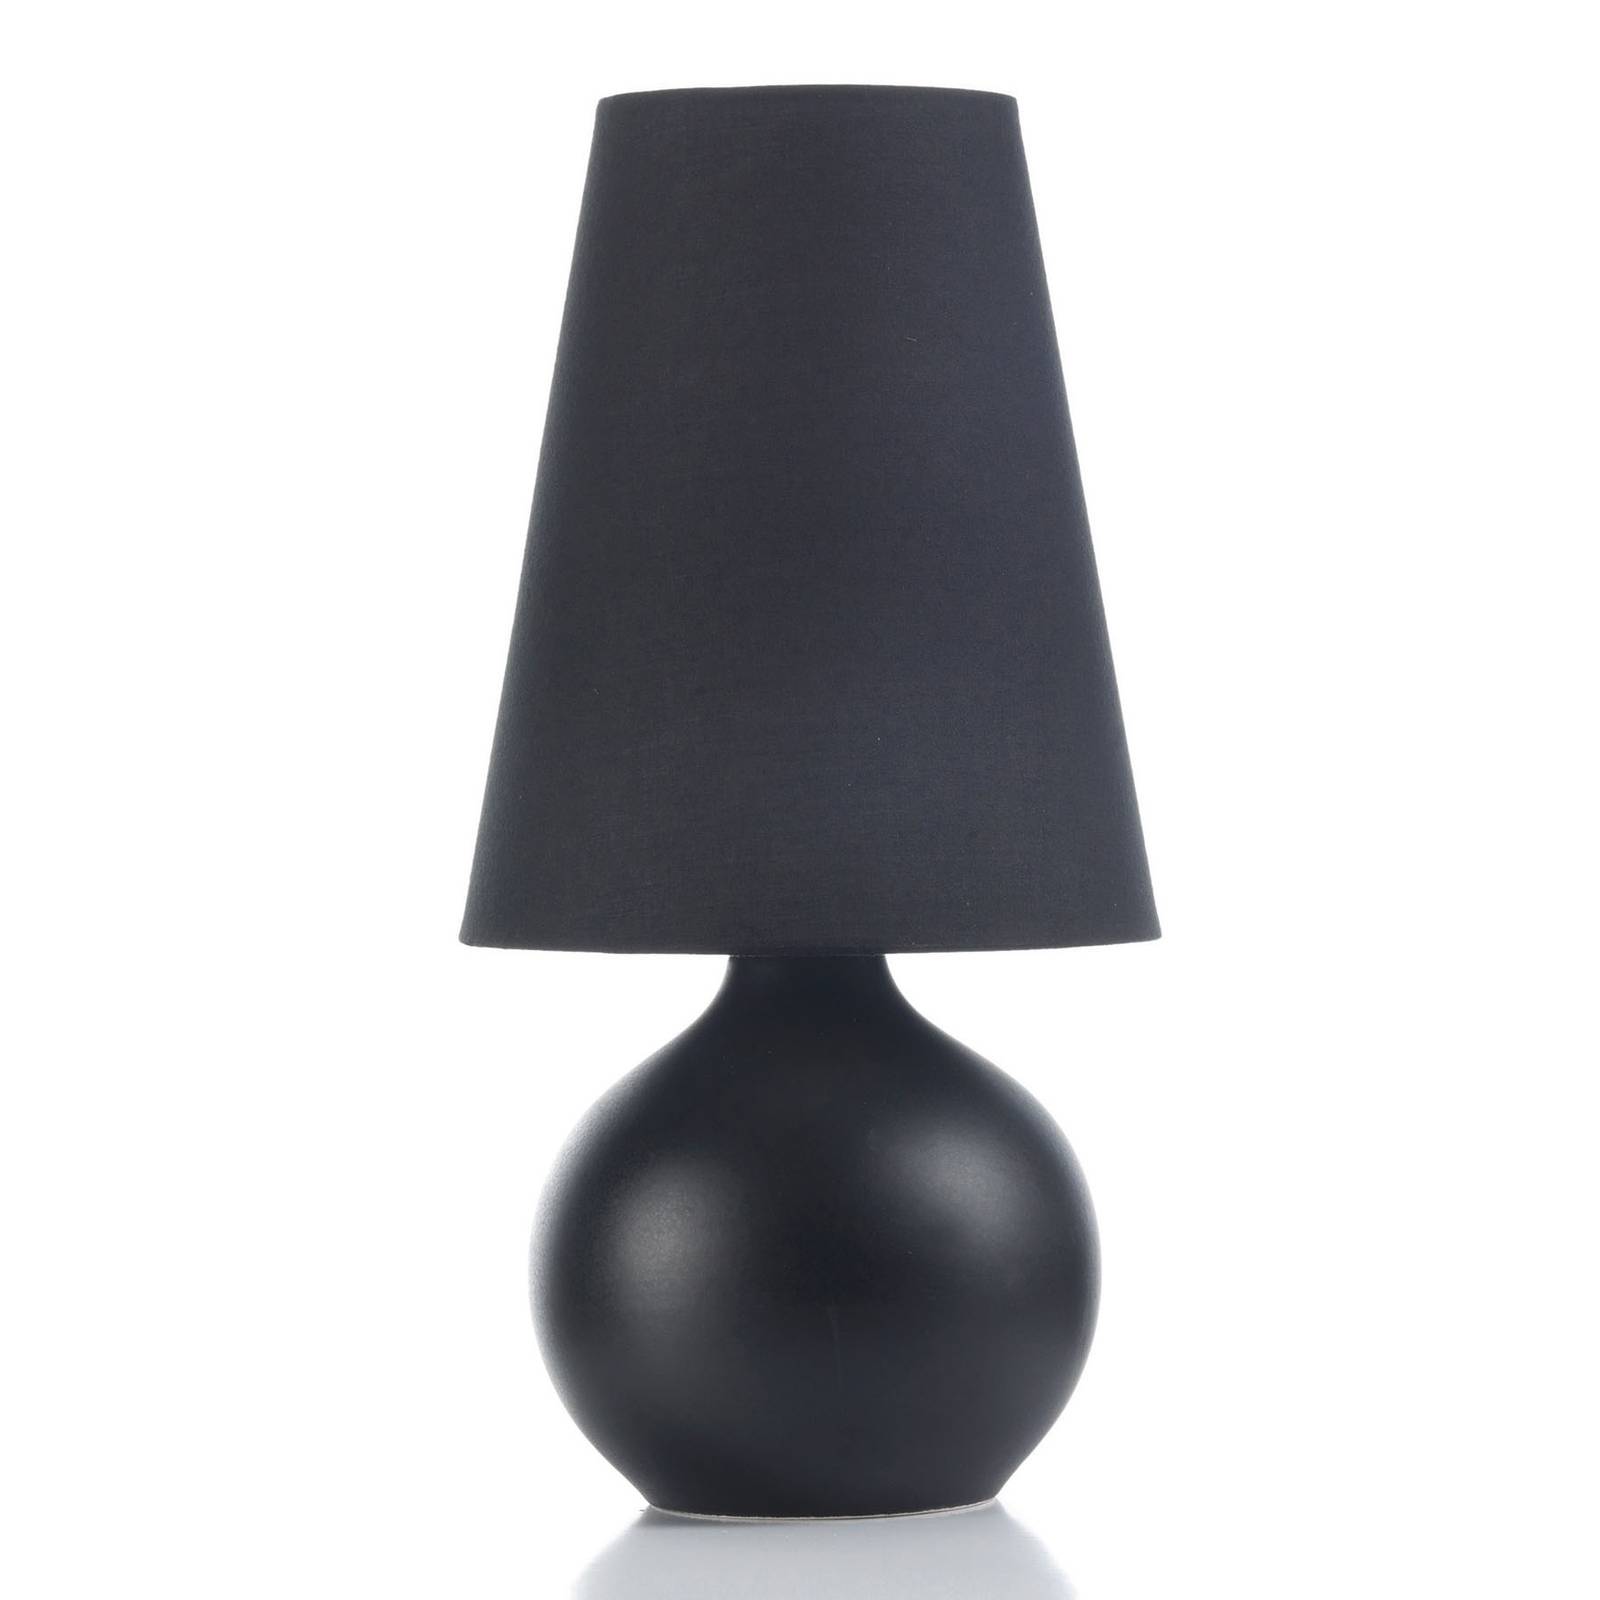 Sfera asztali lámpa, 44 cm magas, fekete